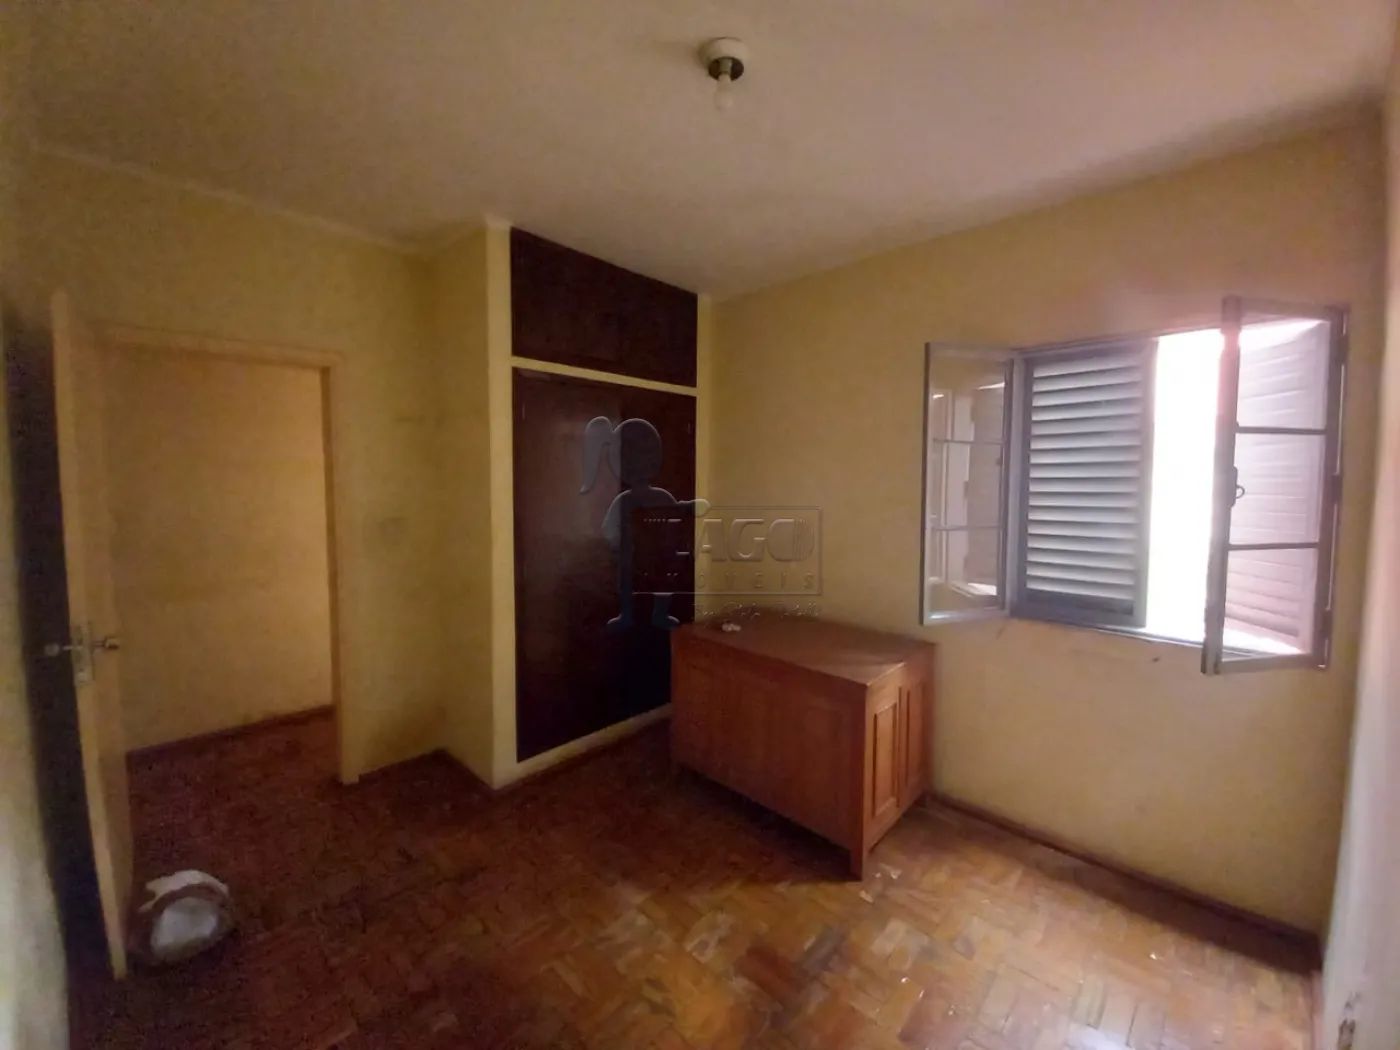 Comprar Casa / Padrão em Ribeirão Preto R$ 318.000,00 - Foto 6